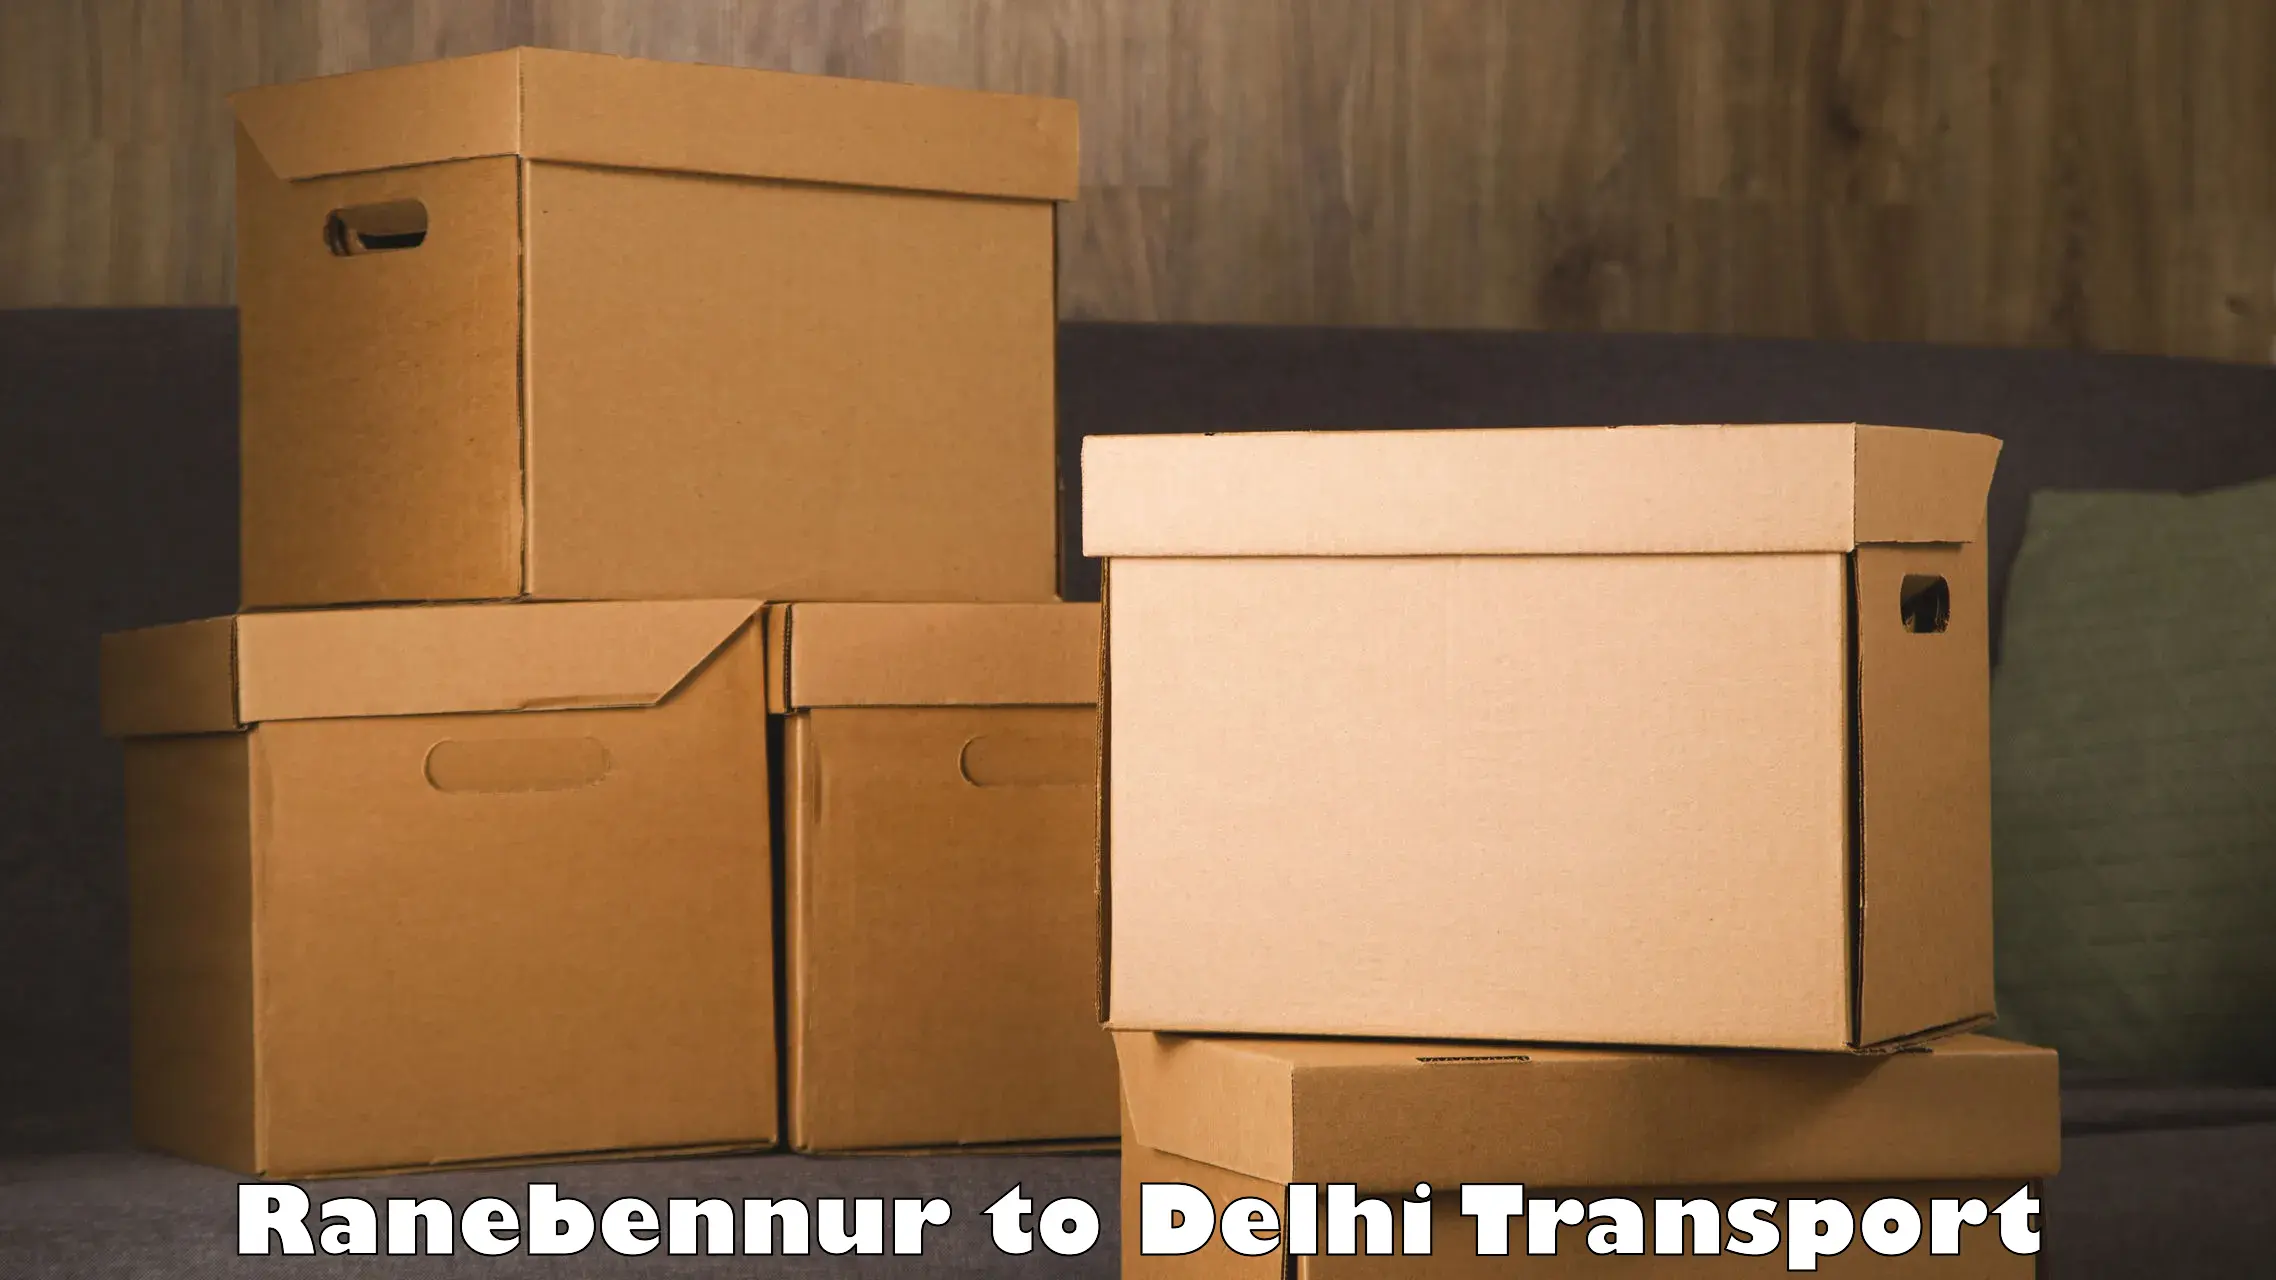 Nearby transport service Ranebennur to Delhi